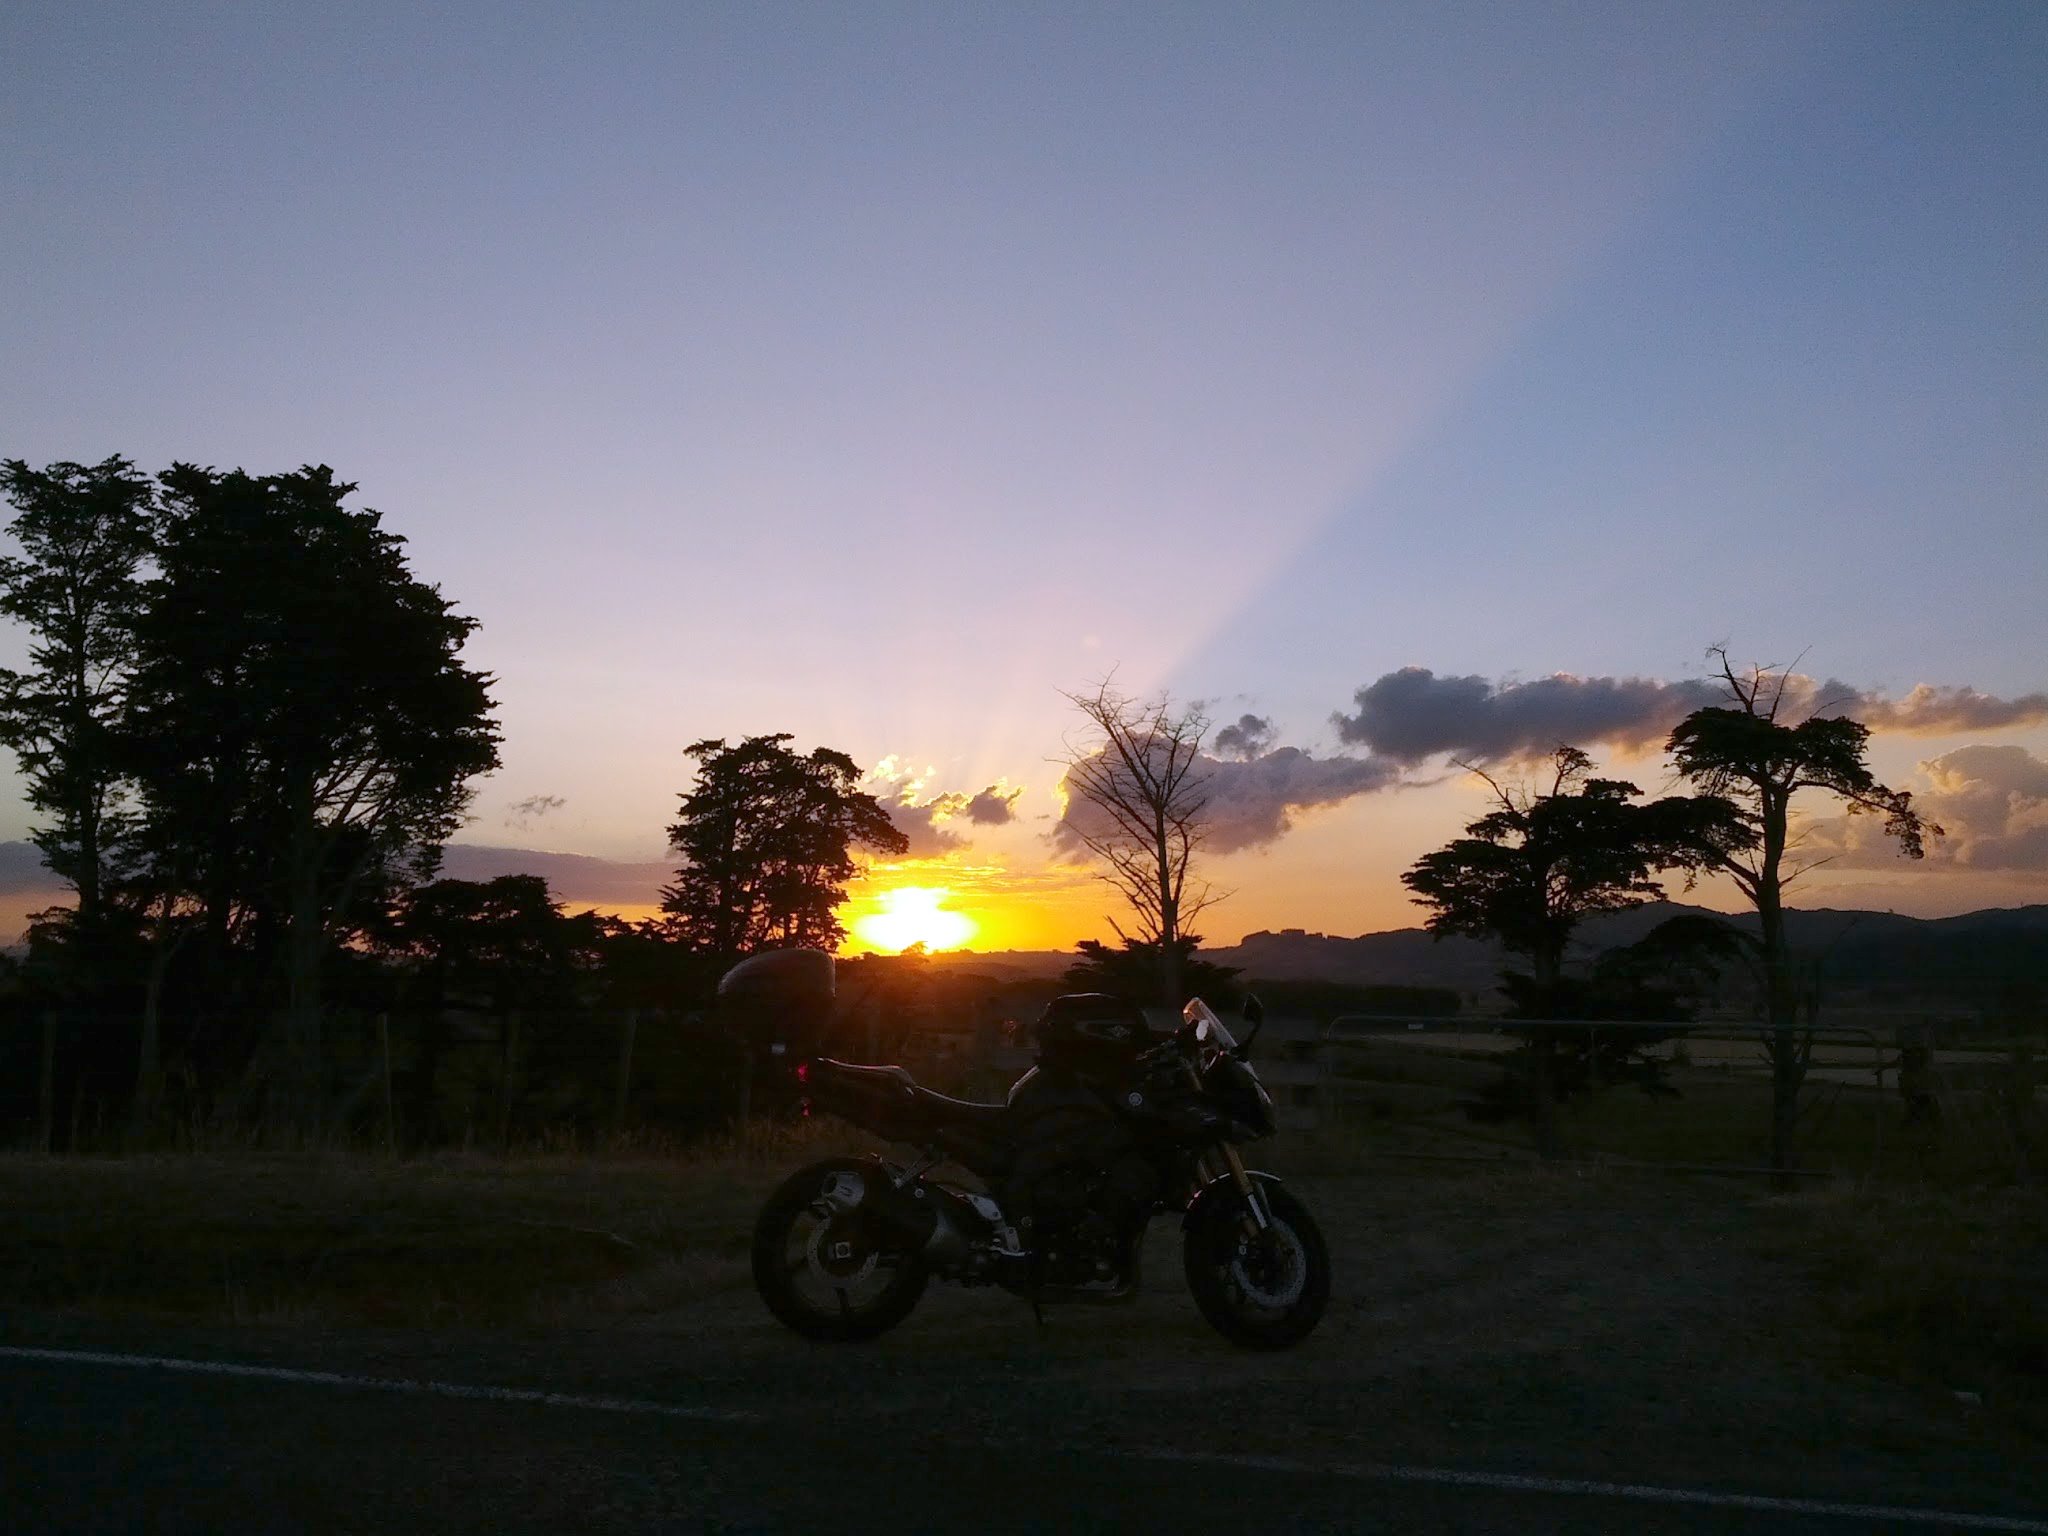 Sunset near Maramarua